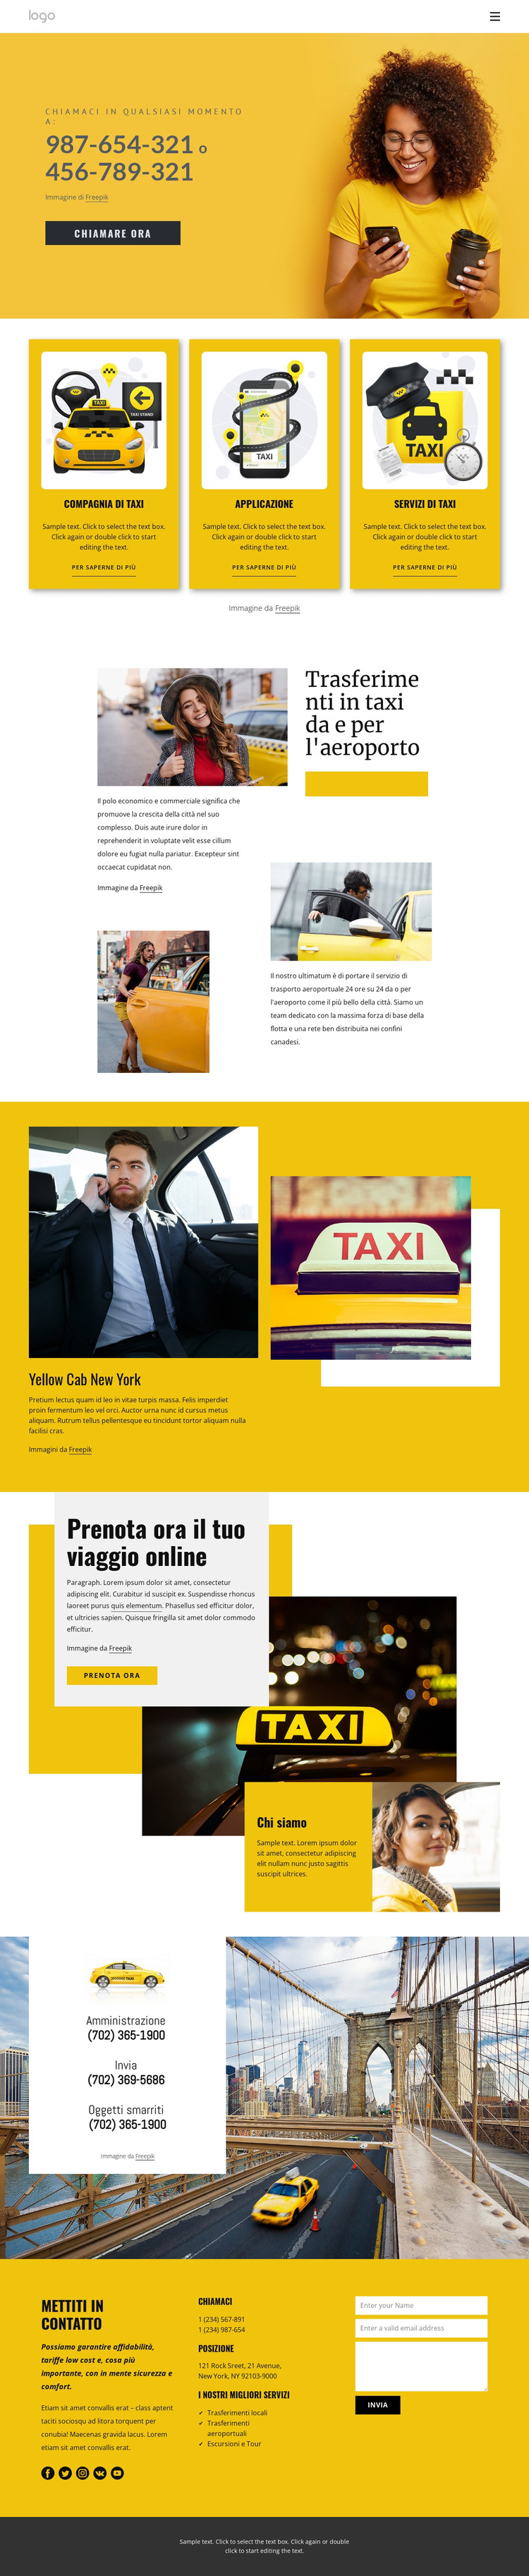 Servizio taxi di qualità Modello di sito Web